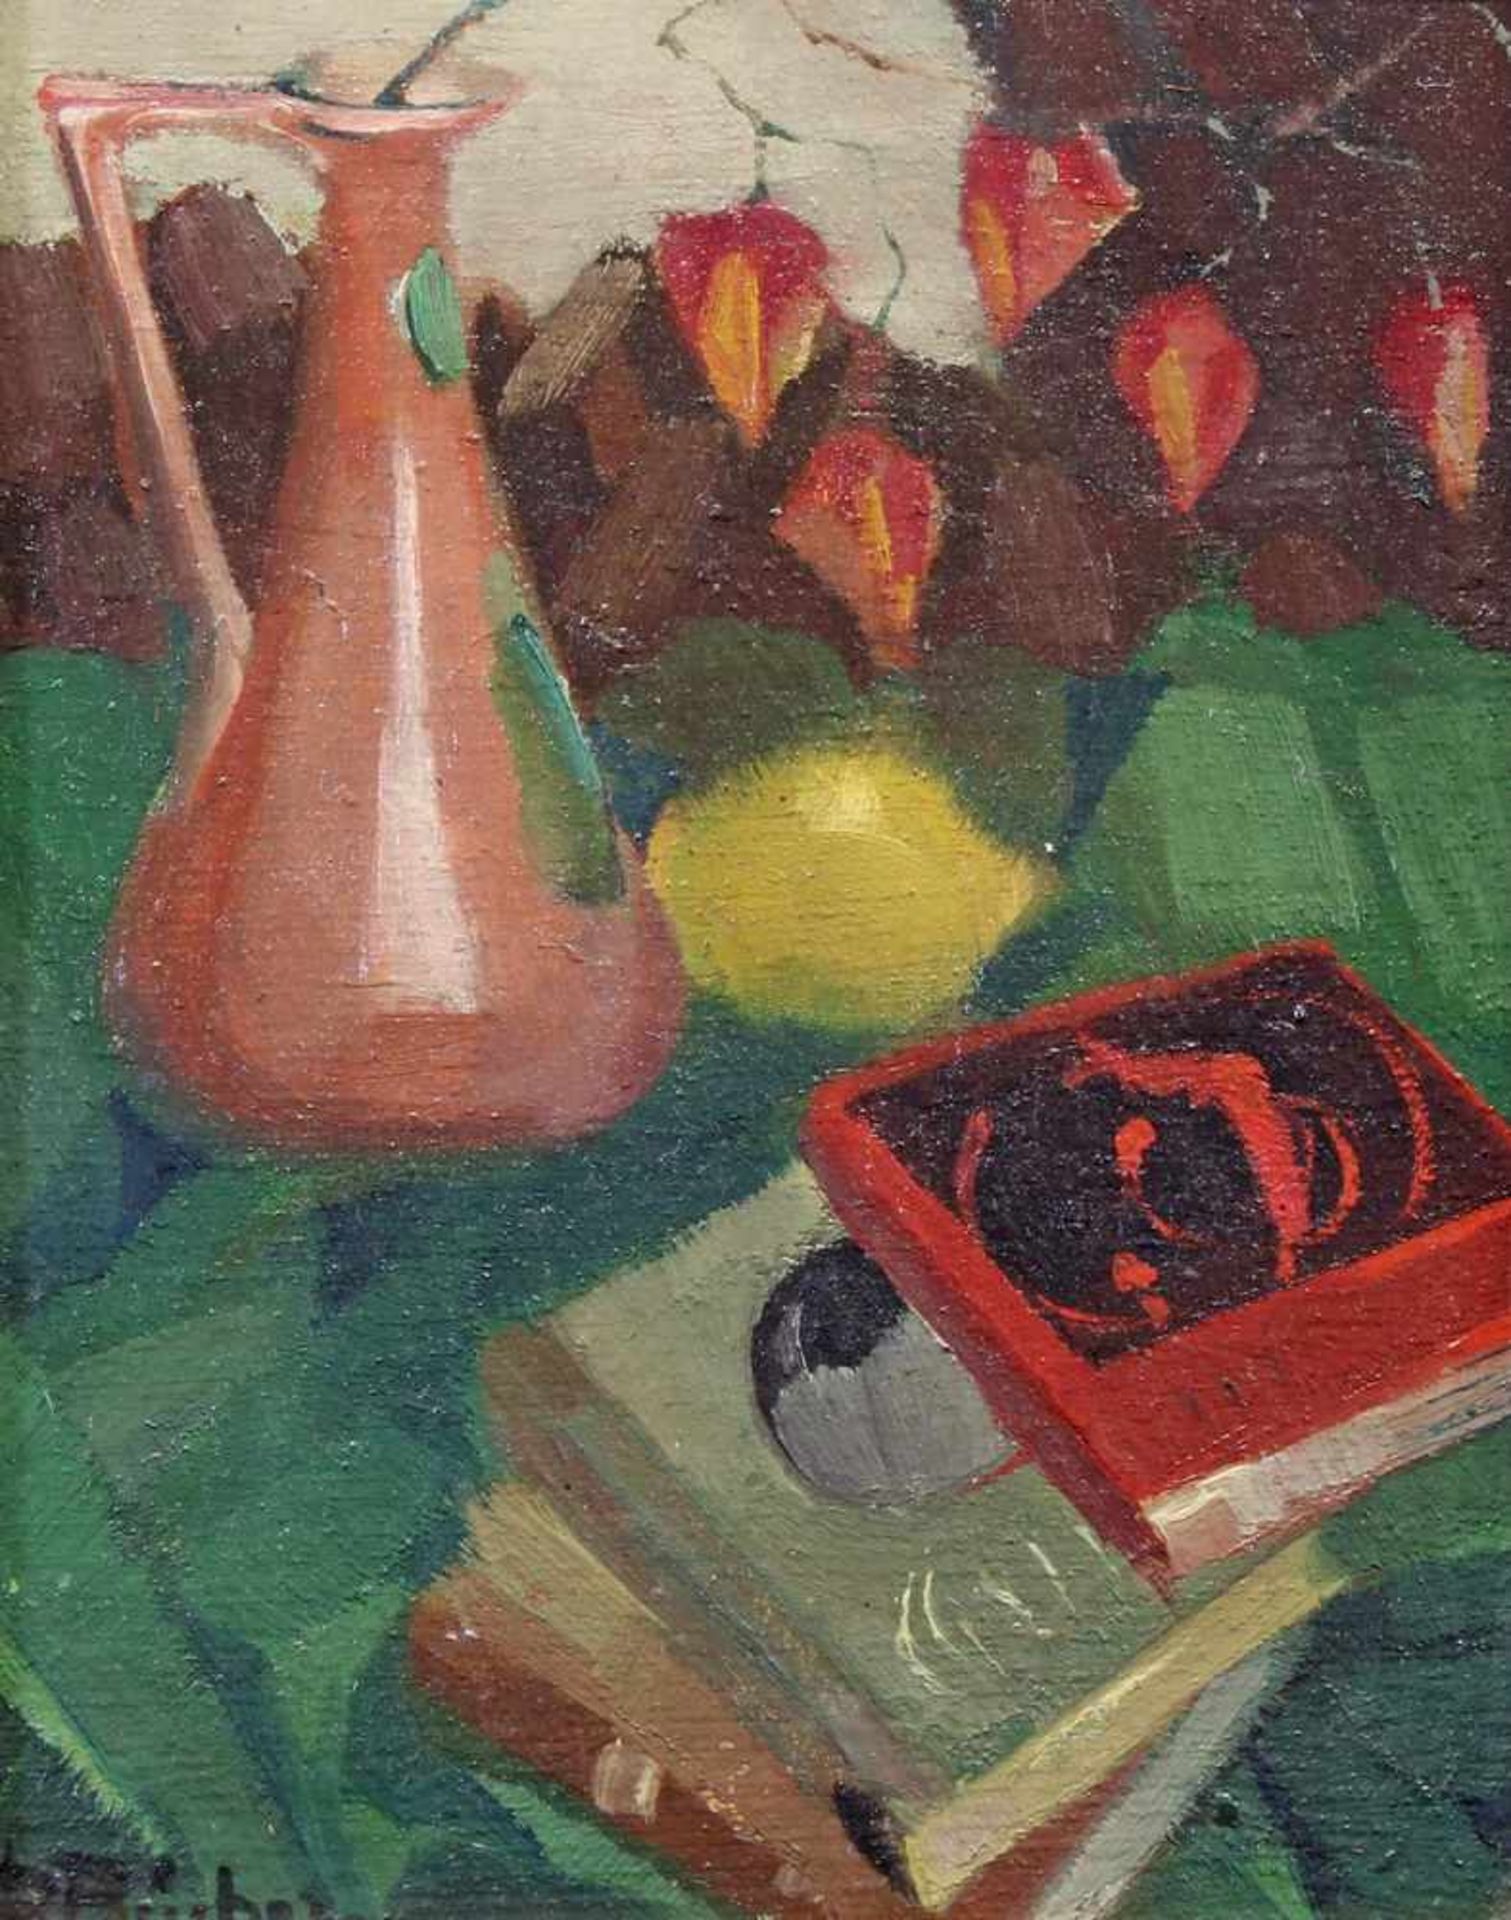 Bücher, Paul (1891 - 1968 Düsseldorf, Landschaftsmaler), "Stillleben mit Büchern und Kupferkanne",